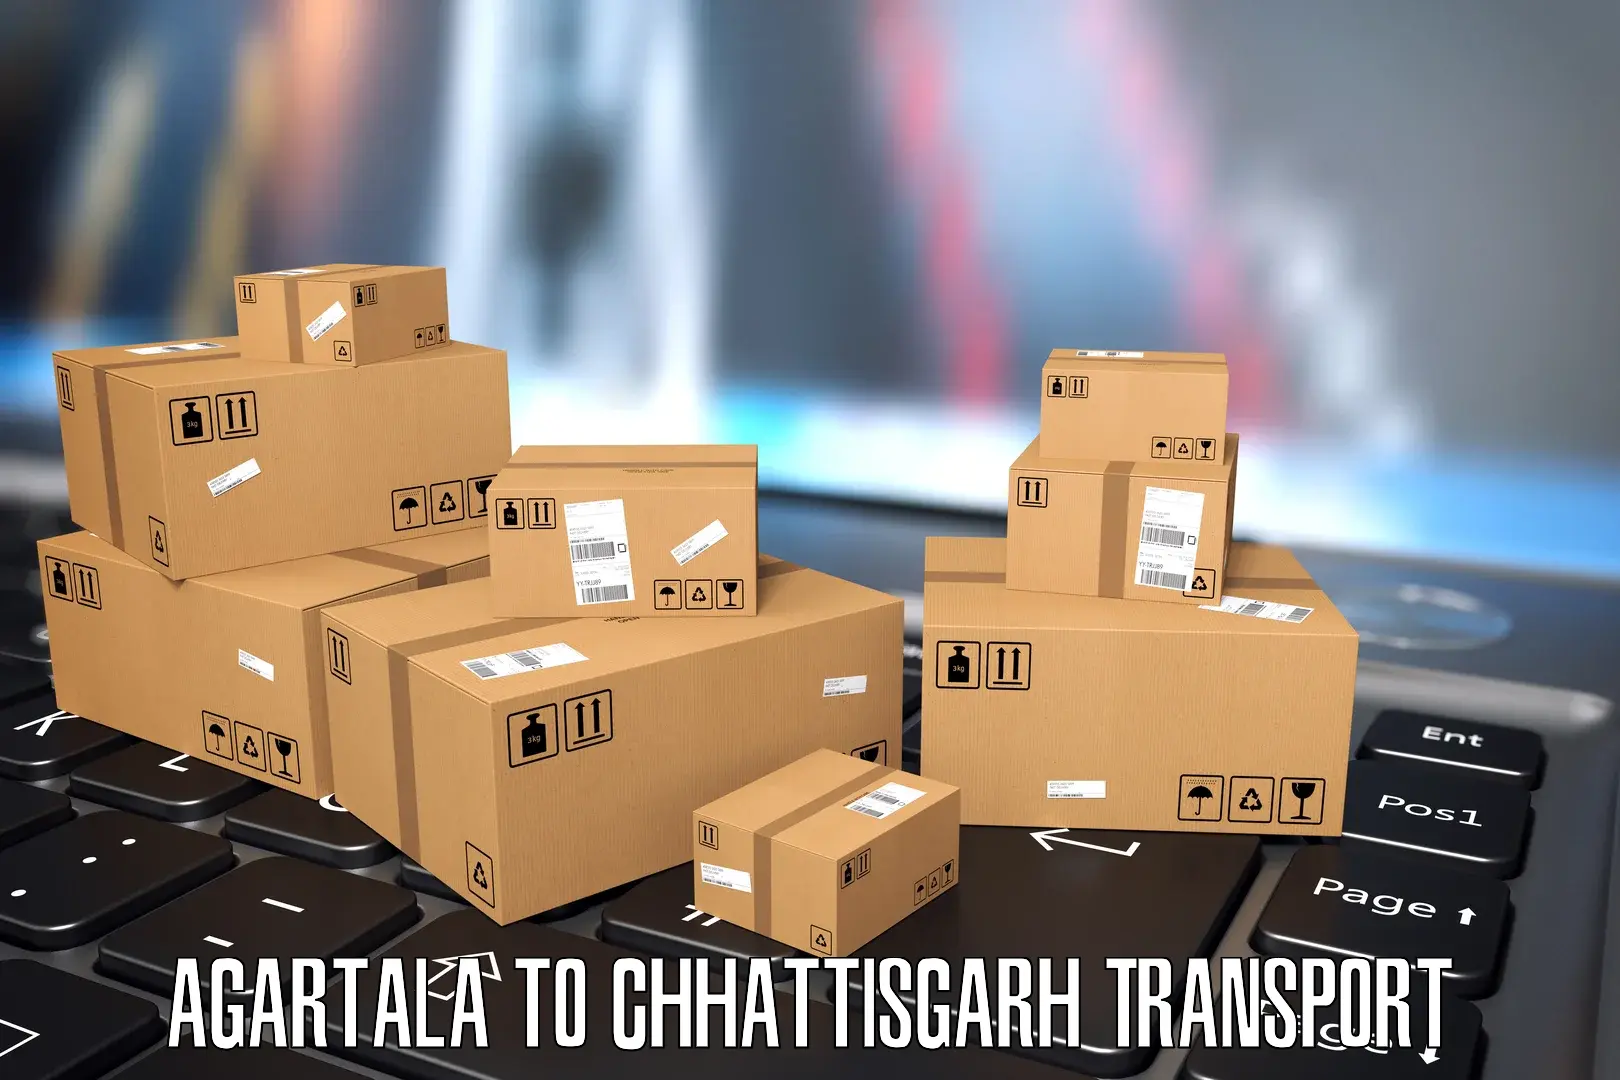 Container transport service Agartala to Chhattisgarh